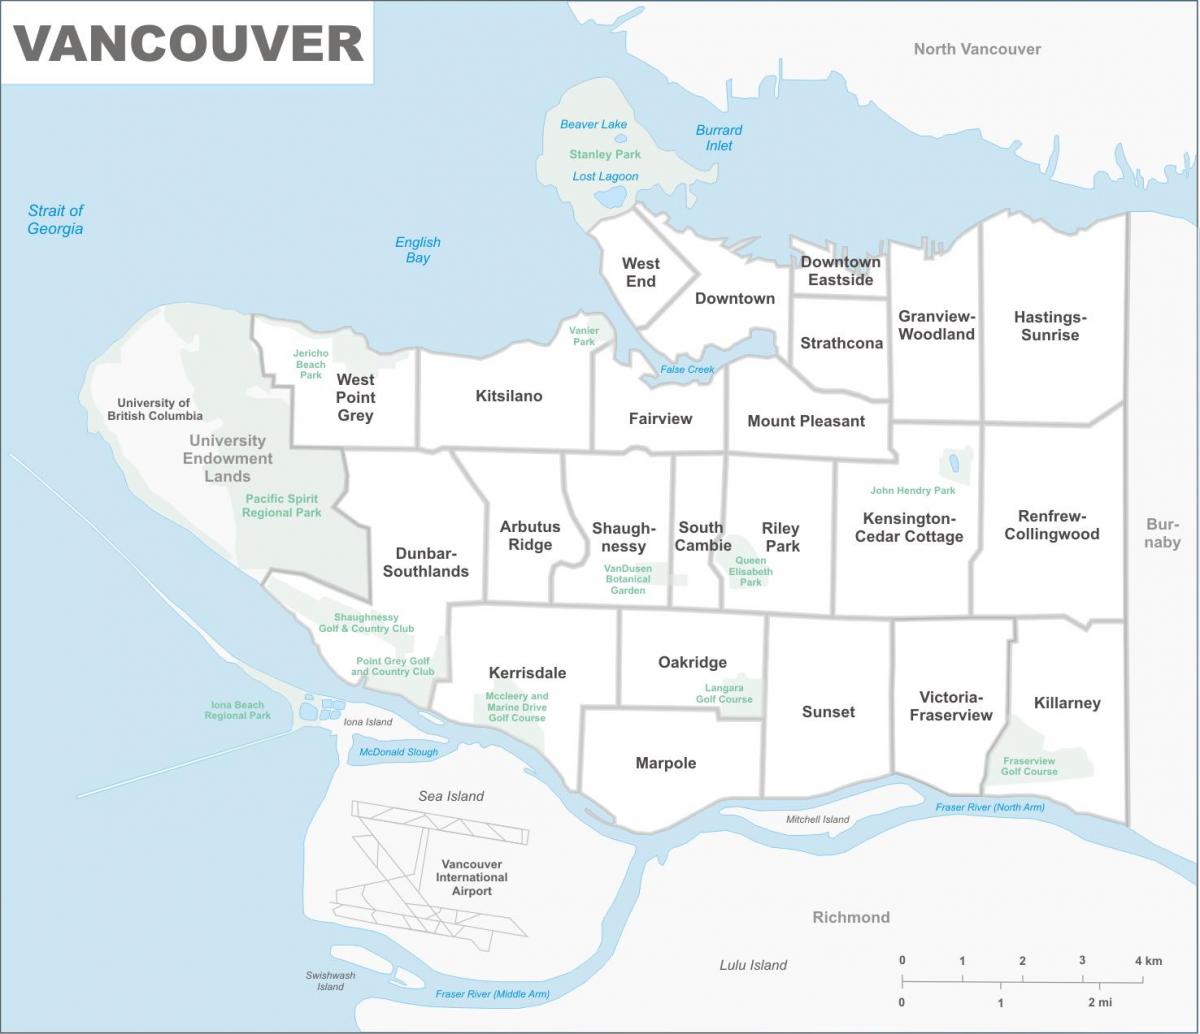 околностите на Ванкувър картата